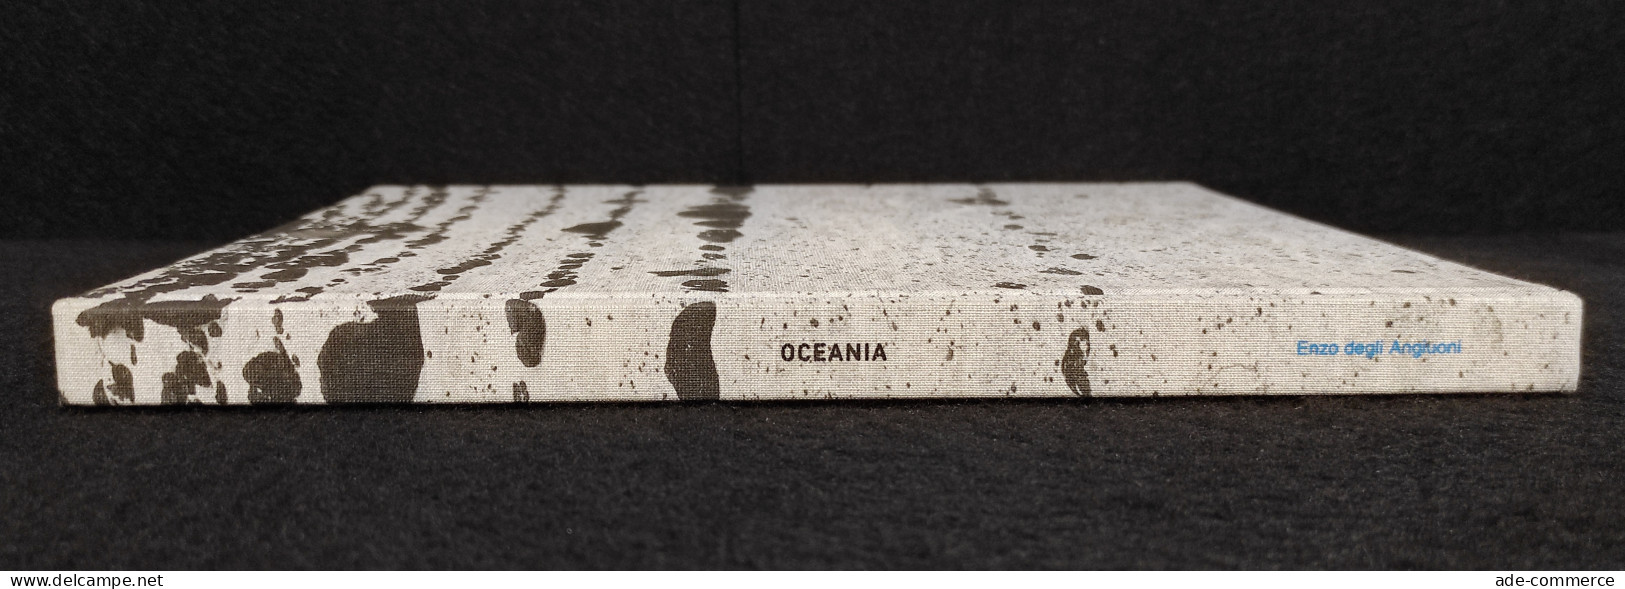 Oceania - Enzo Degli Angiuoni - Fotografia Arte - Pictures